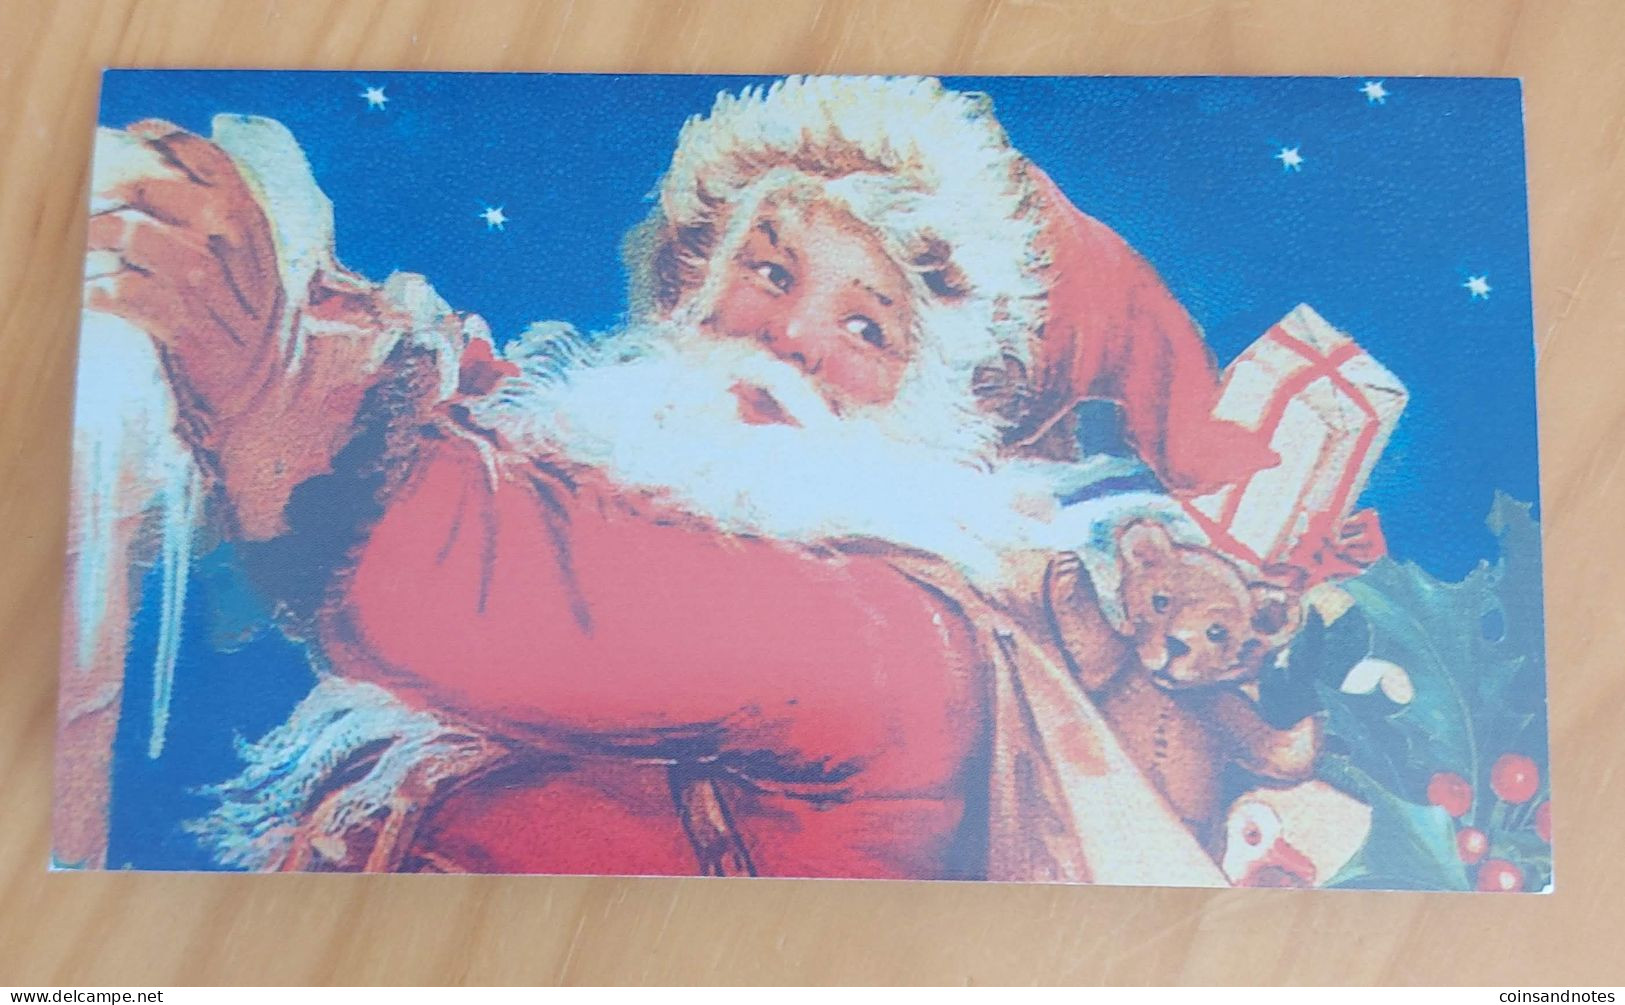 USA 2006 - Santa Claus Real $1 Note - Christmas Gift - Ltd Edition